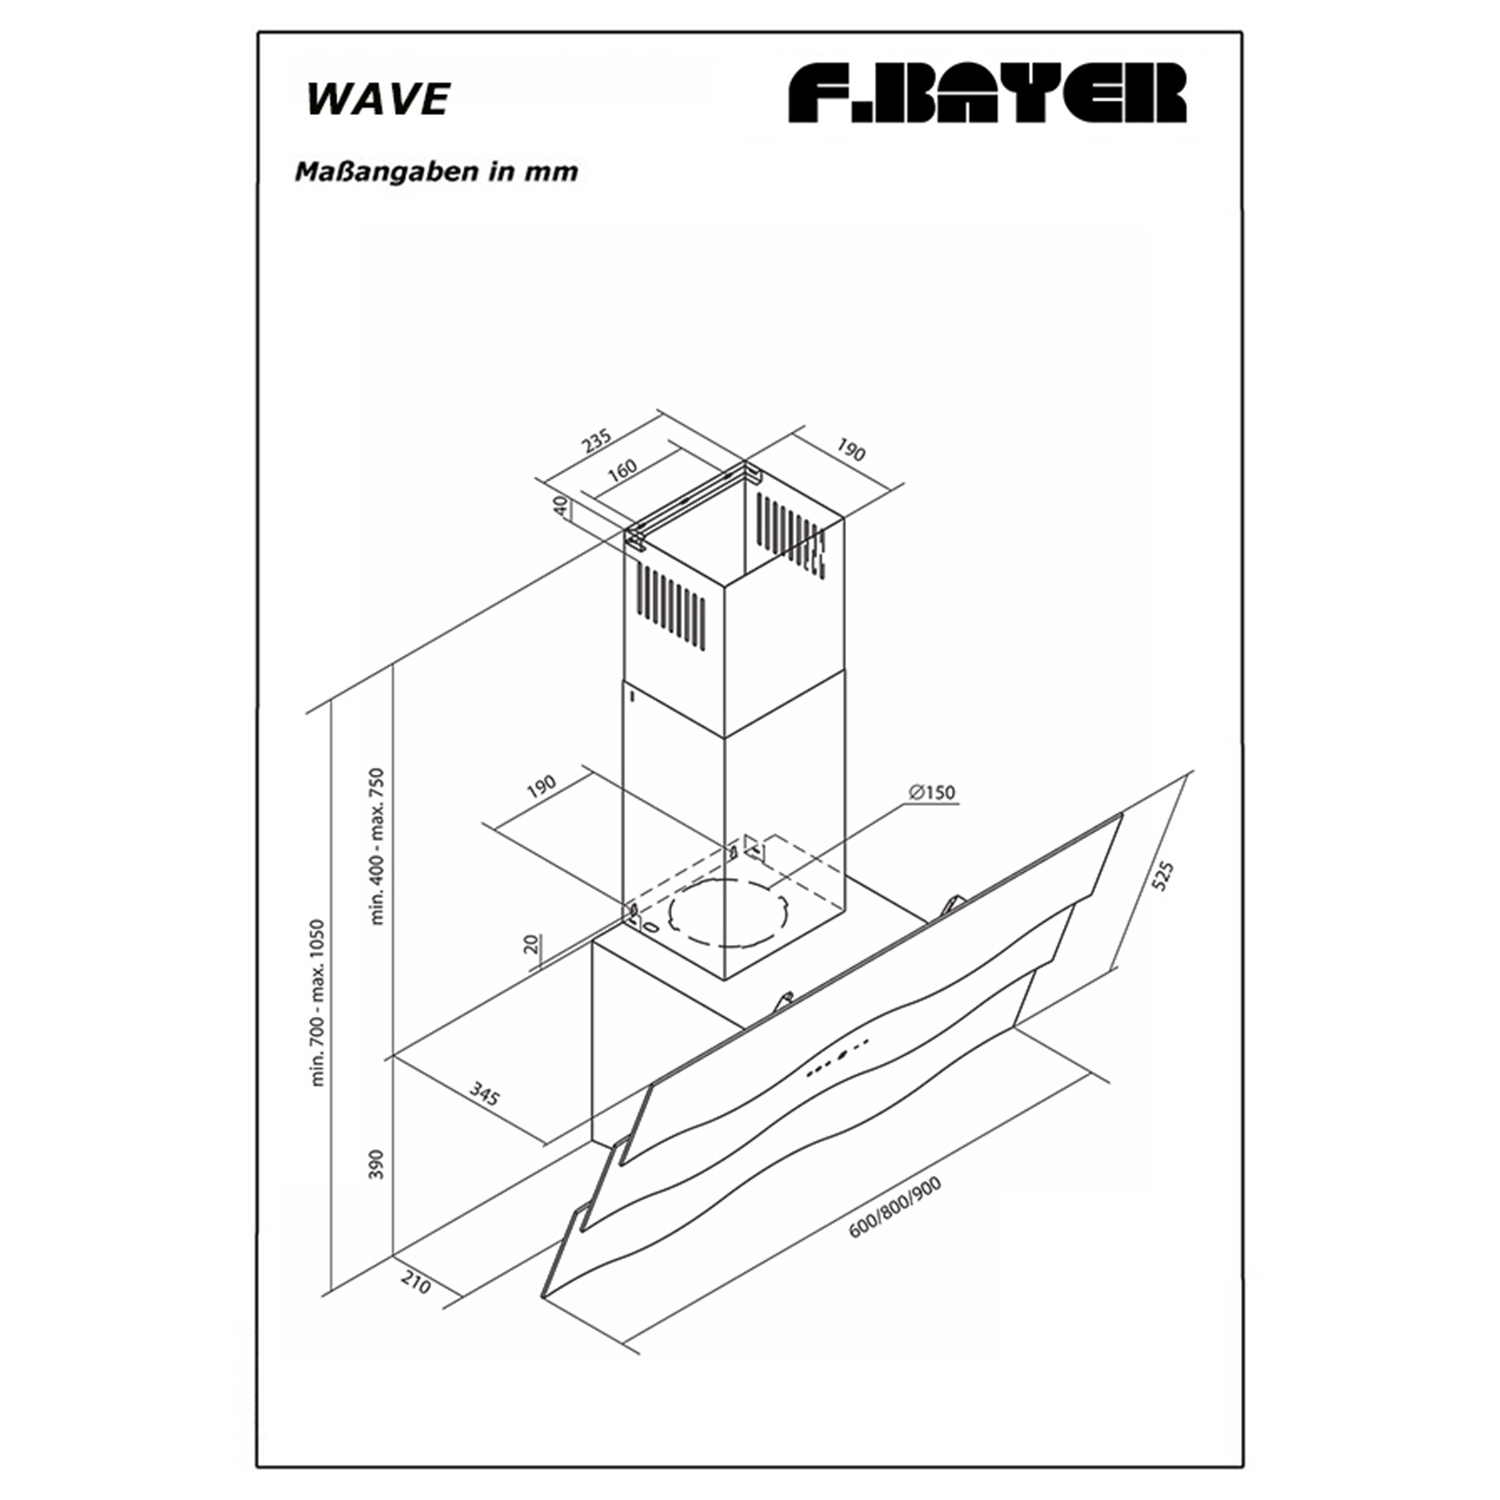 F.BAYER WAVE breit, cm (90 34,5 Dunstabzugshaube tief) 90W, cm